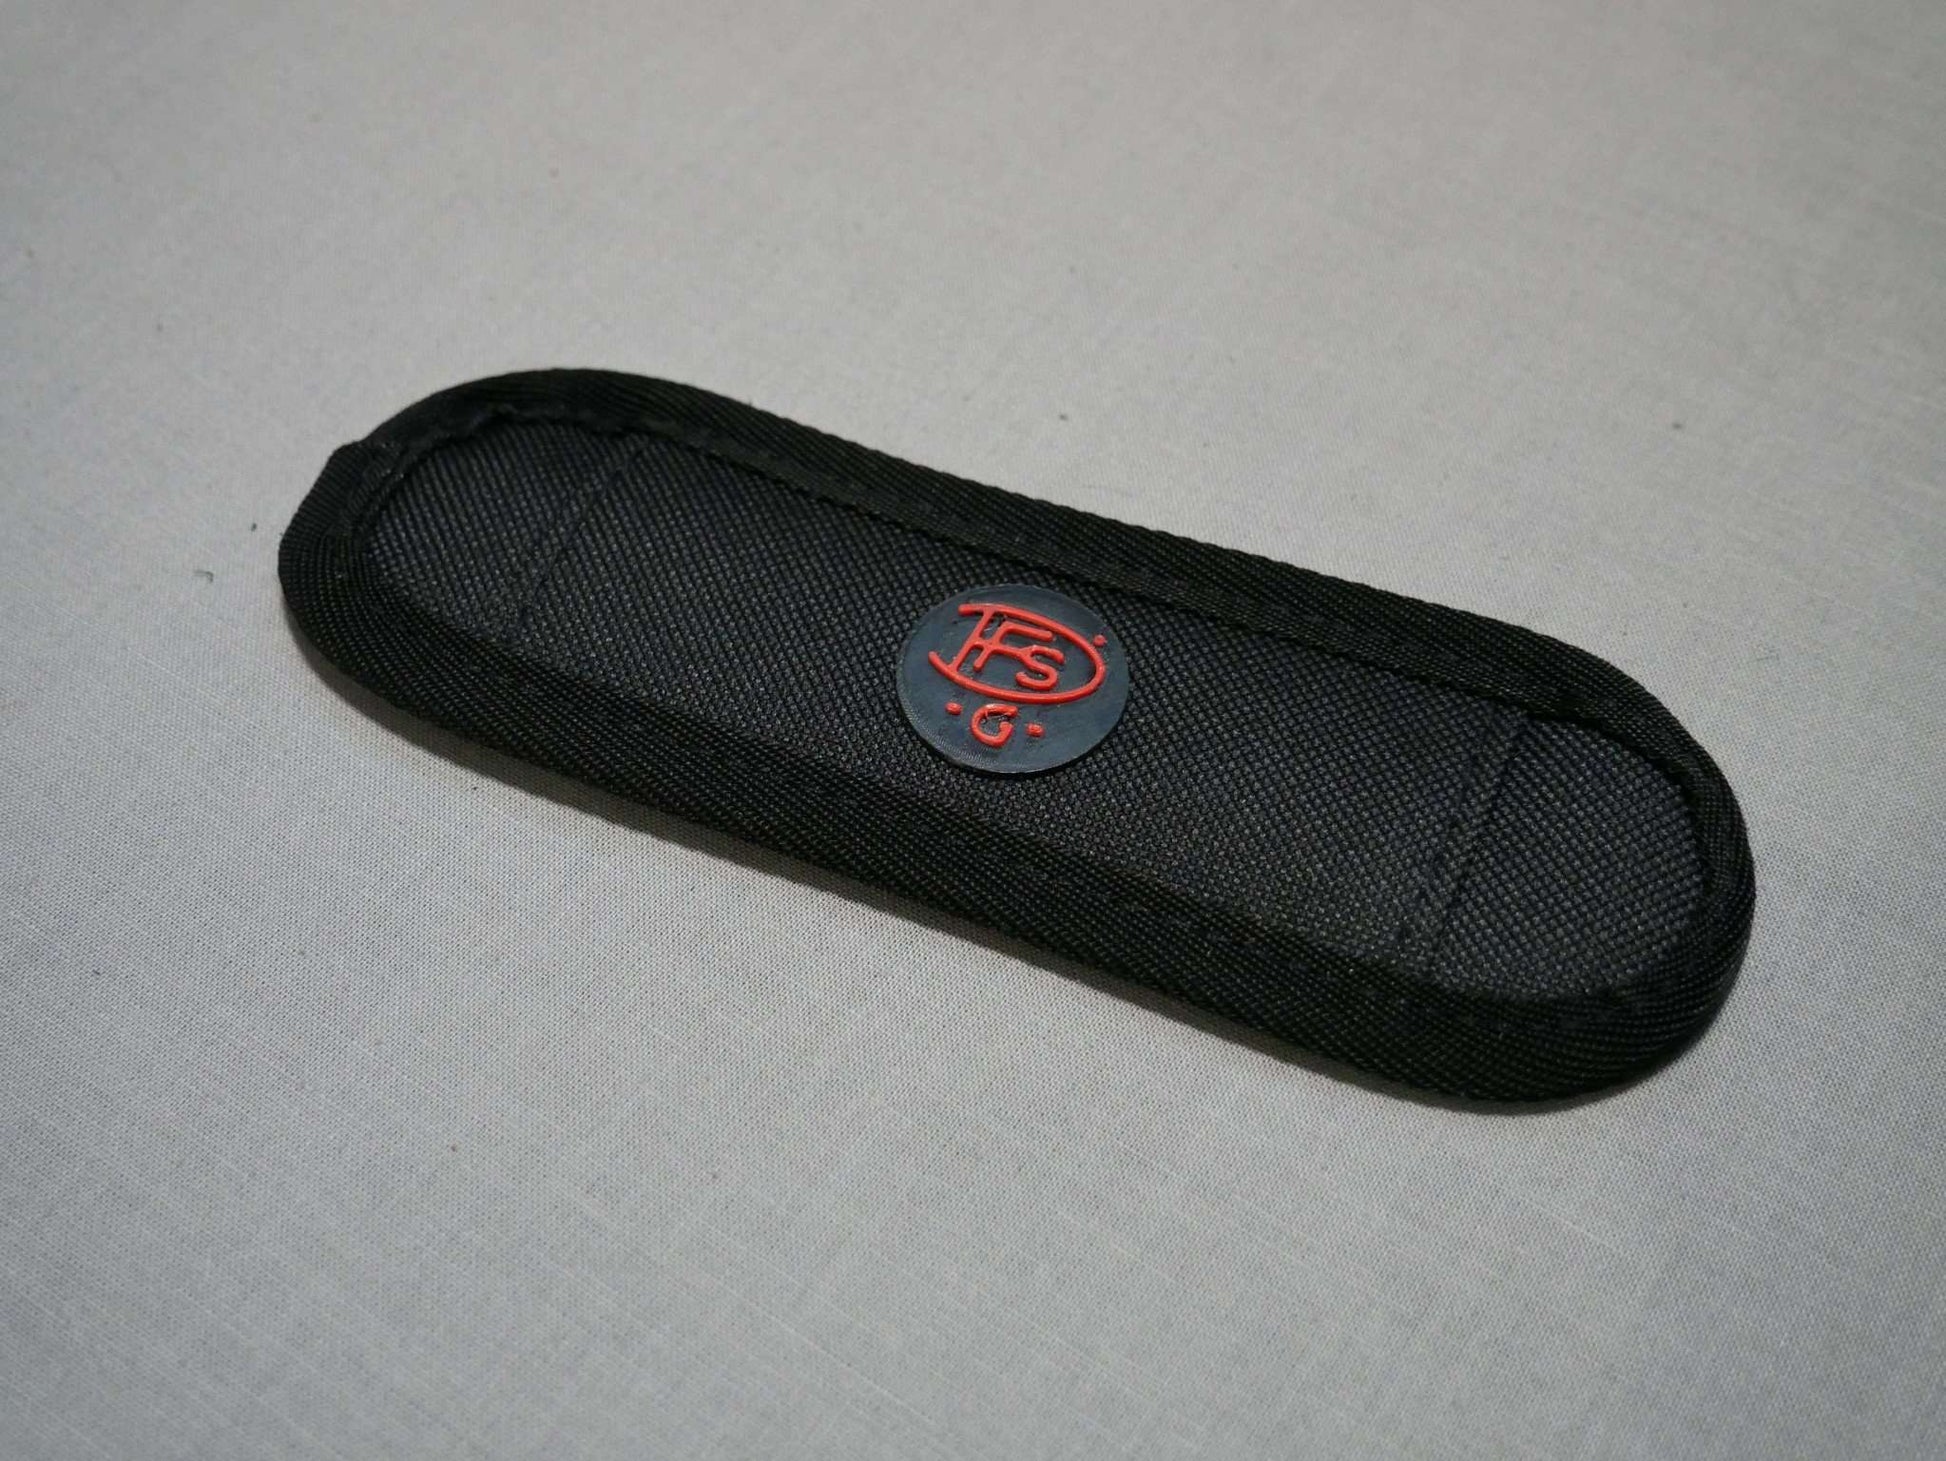 Polster zum Halter mit Halsgurt mit DFS-G- Logo aus hochwertigem Nylon gefertigt